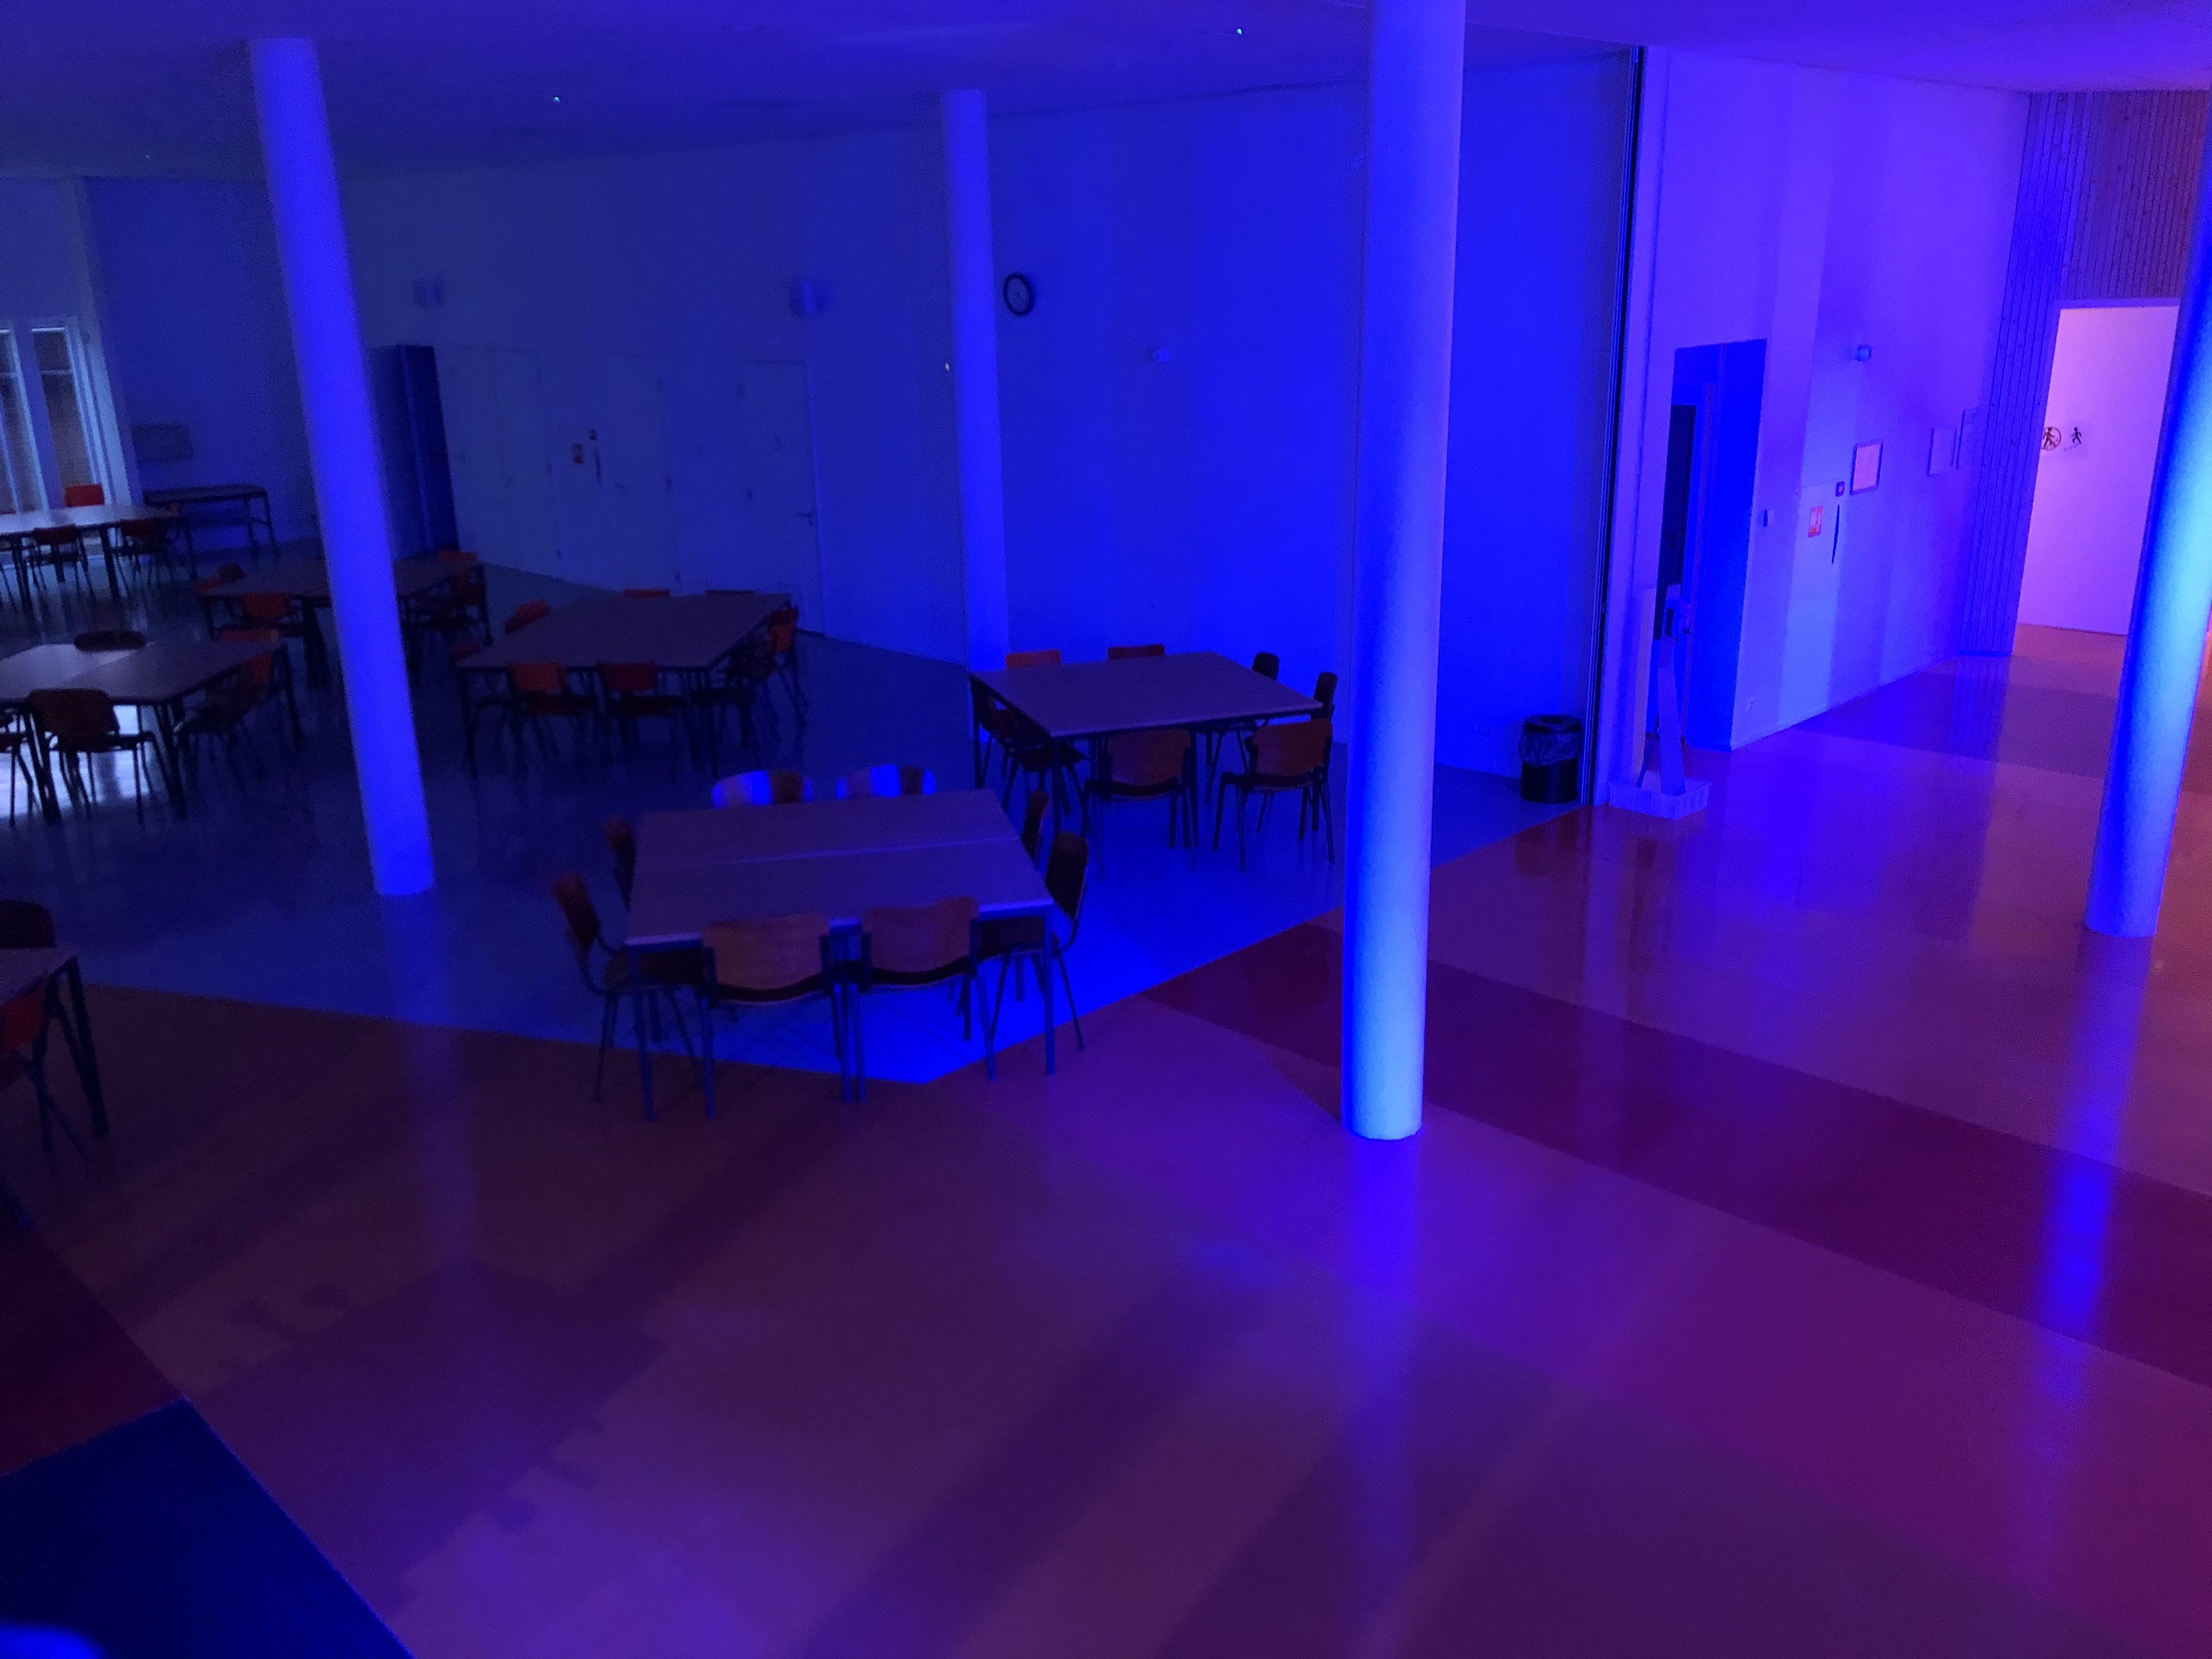 Ook sommige Unesco-scholen deden mee aan de actie om hun gebouw blauw te verlichten. Deze foto is gemaakt op het Leo Kanner College in Oegstgeest.